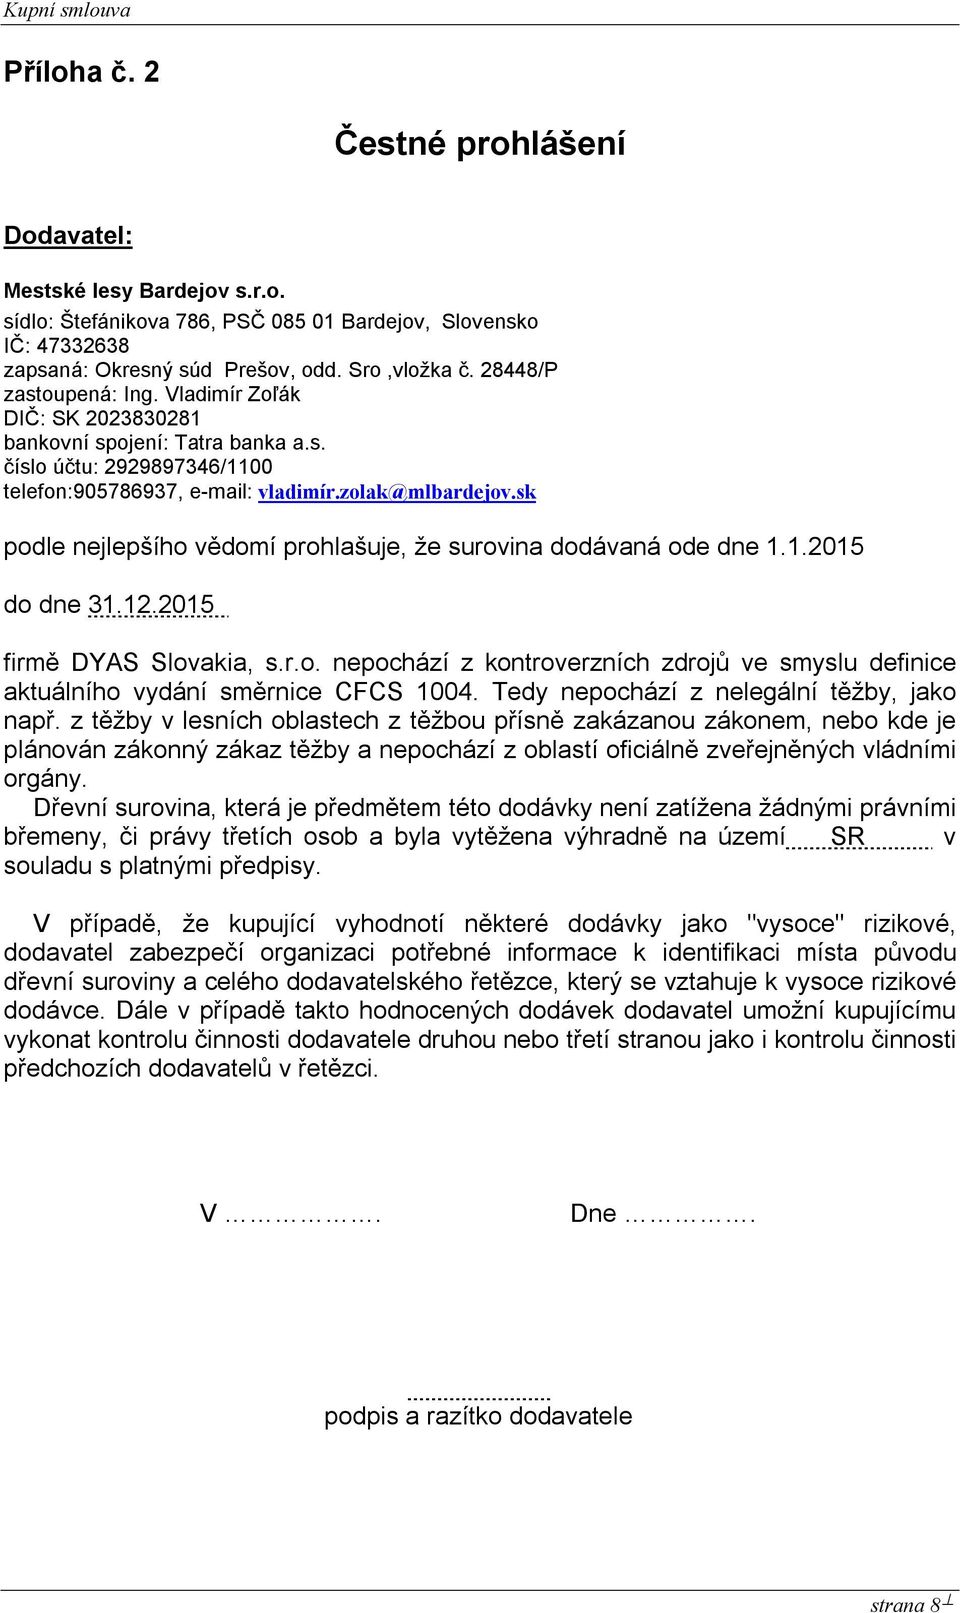 sk podle nejlepšího vědomí prohlašuje, že surovina dodávaná ode dne 1.1.2015 do dne 31.12.2015 firmě DYAS Slovakia, s.r.o. nepochází z kontroverzních zdrojů ve smyslu definice aktuálního vydání směrnice CFCS 1004.